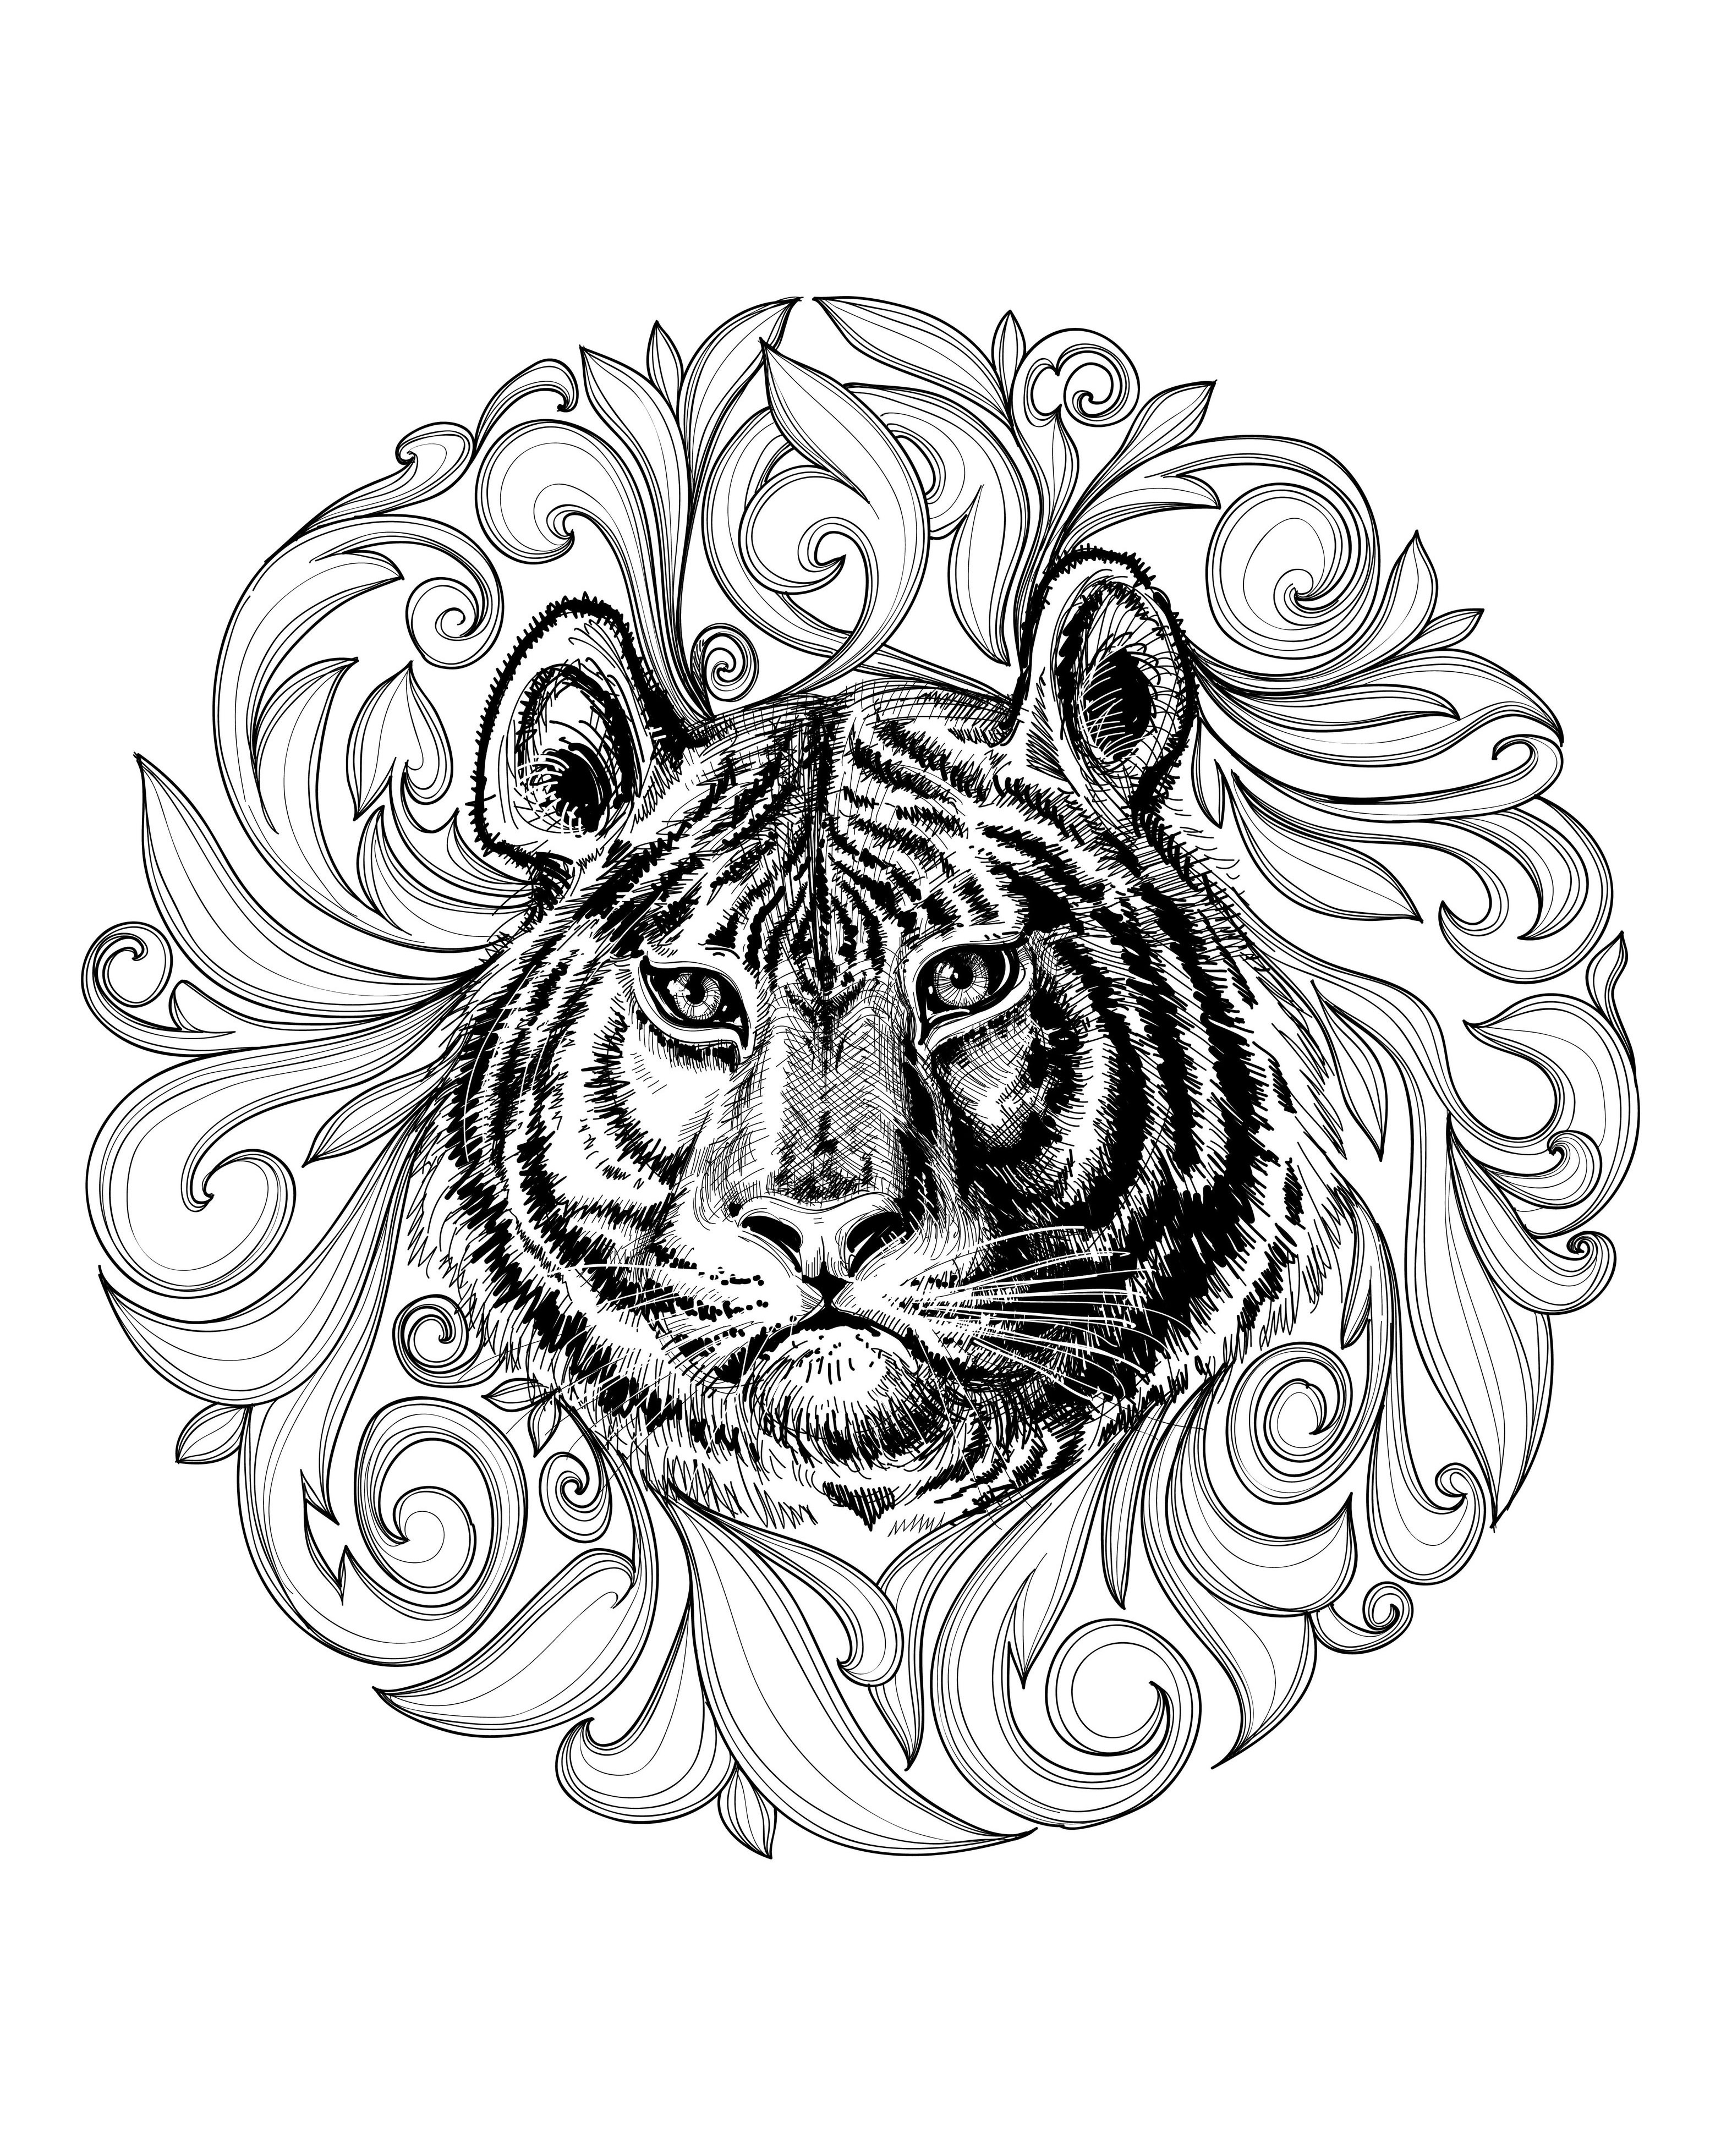 Desenho de um tigre majestoso realçado por uma mandala. O contraste entre a força do tigre e a delicadeza desta Mandala é simplesmente delicioso.